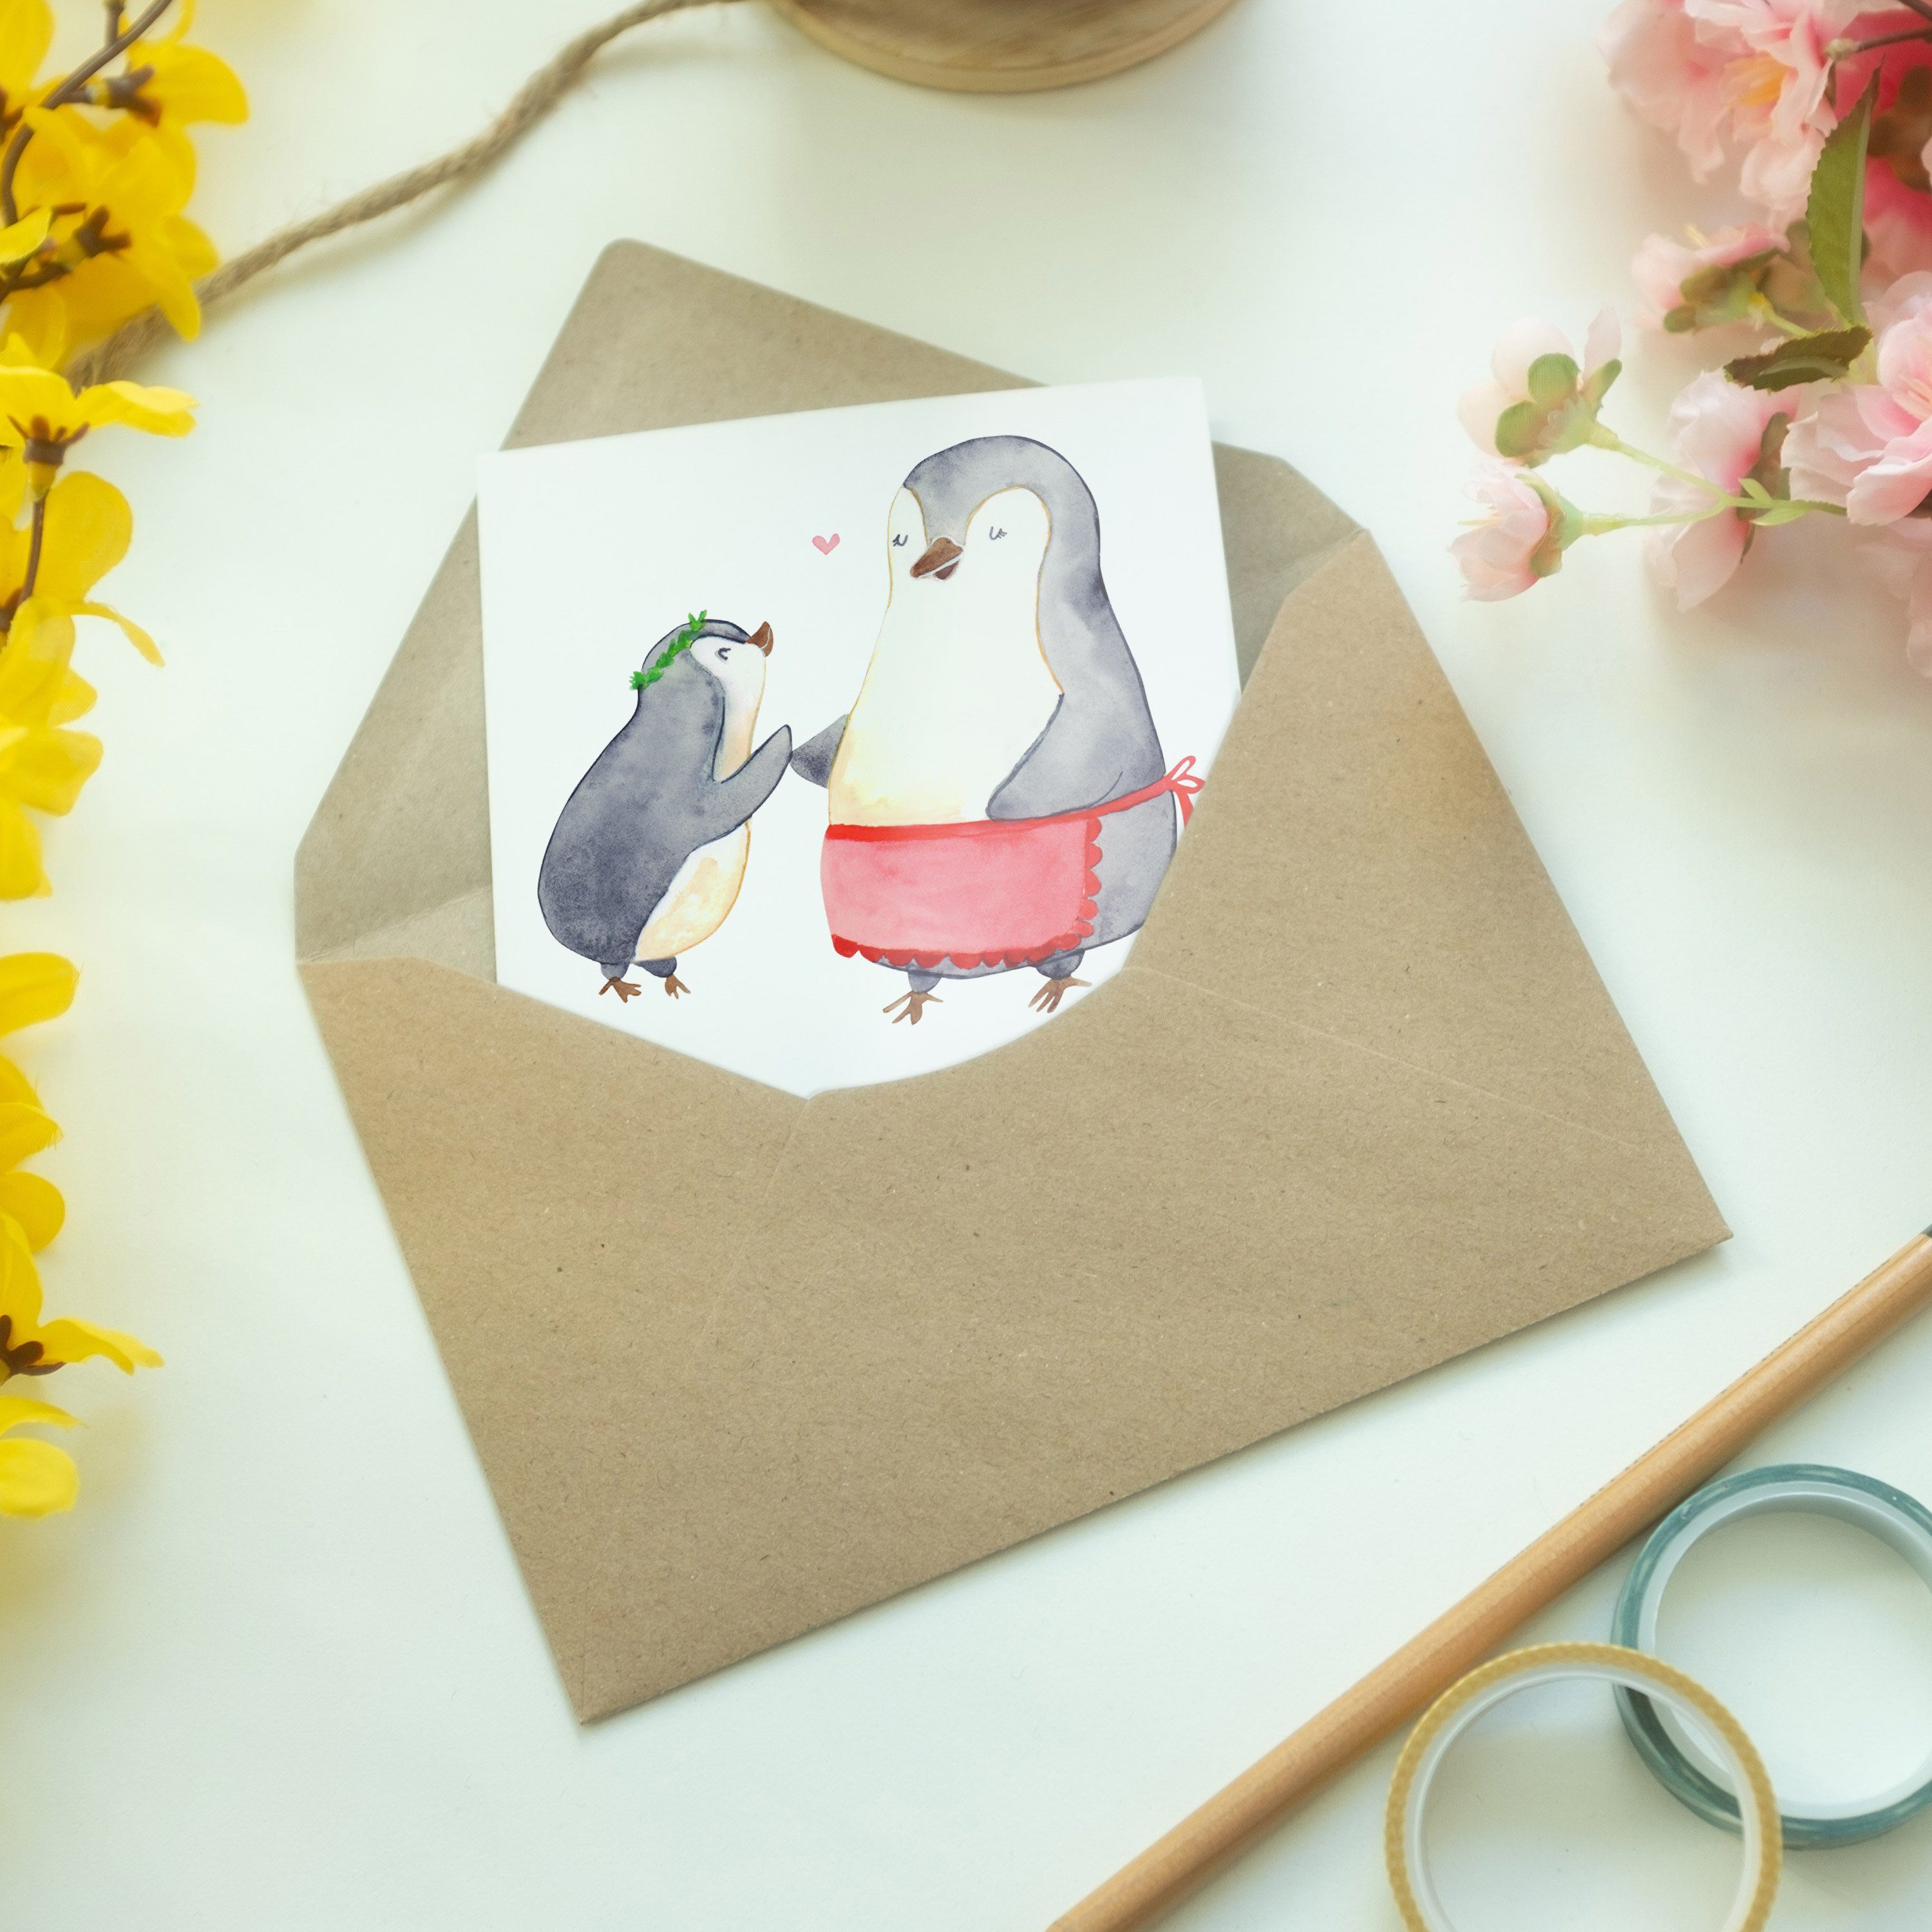 & Mr. Mami Hoch Pinguin Welt Panda Weiß - Beste Geschenk, der Grußkarte Glückwunschkarte, - Mrs.